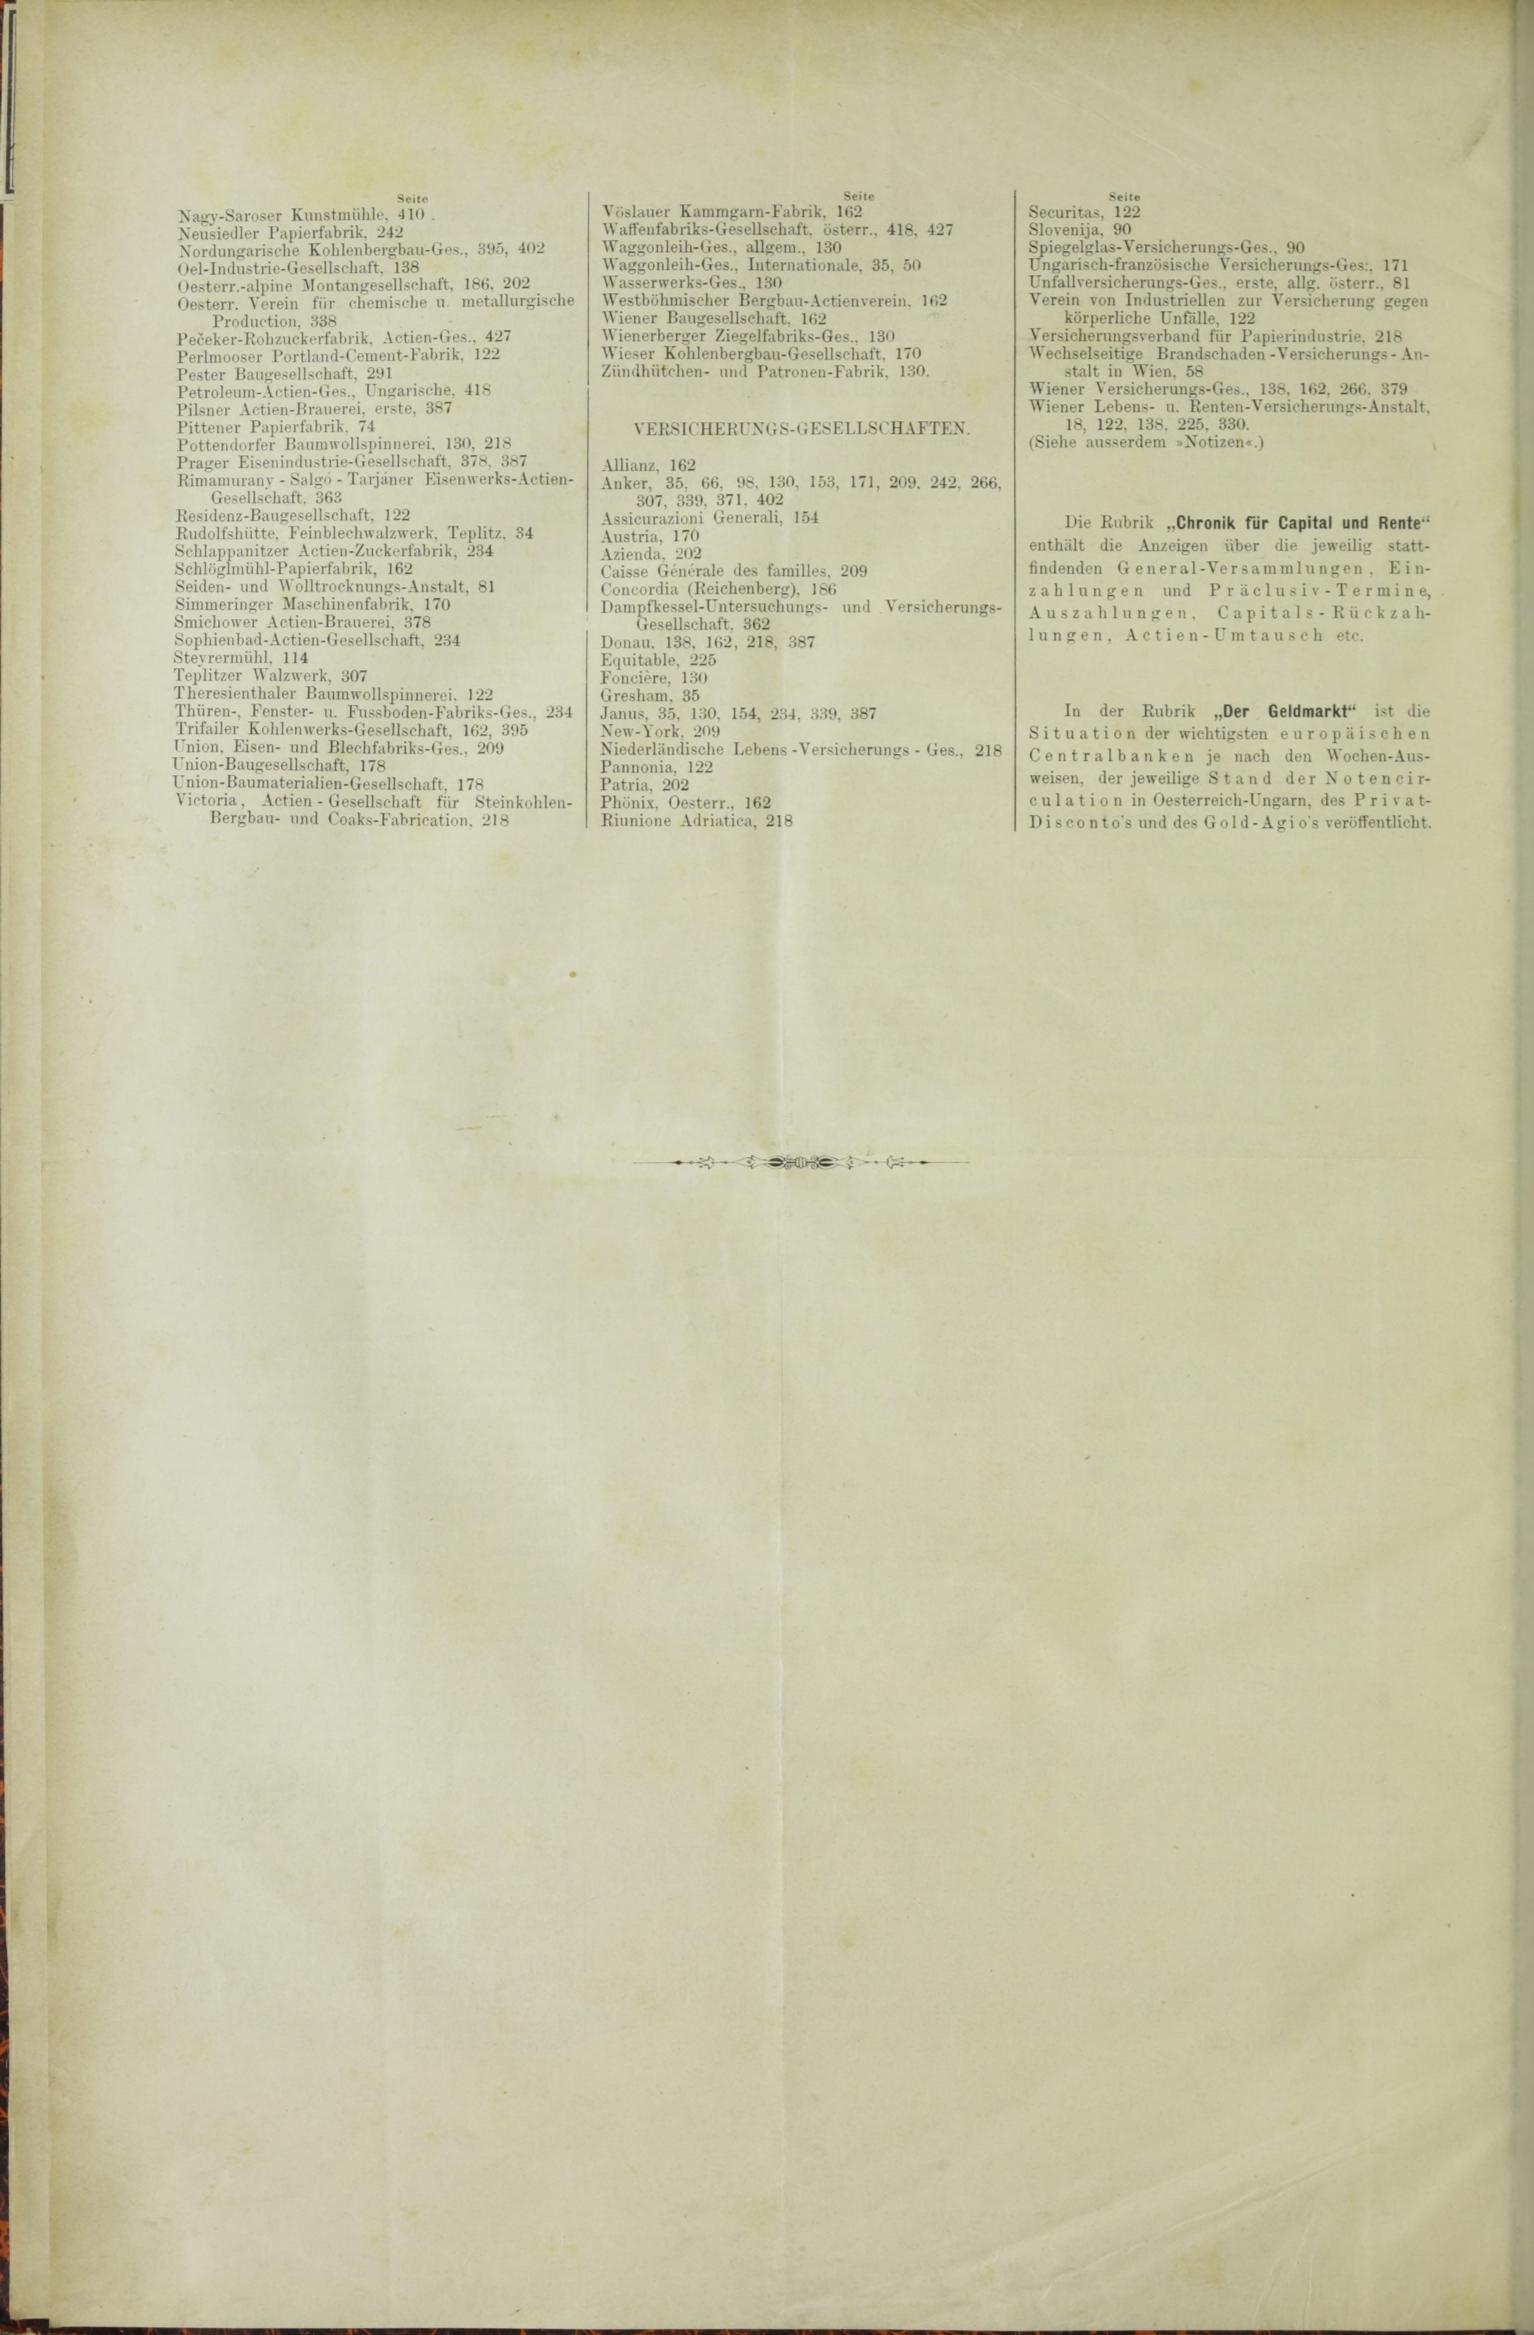 Der Tresor 10.09.1885 - Seite 12